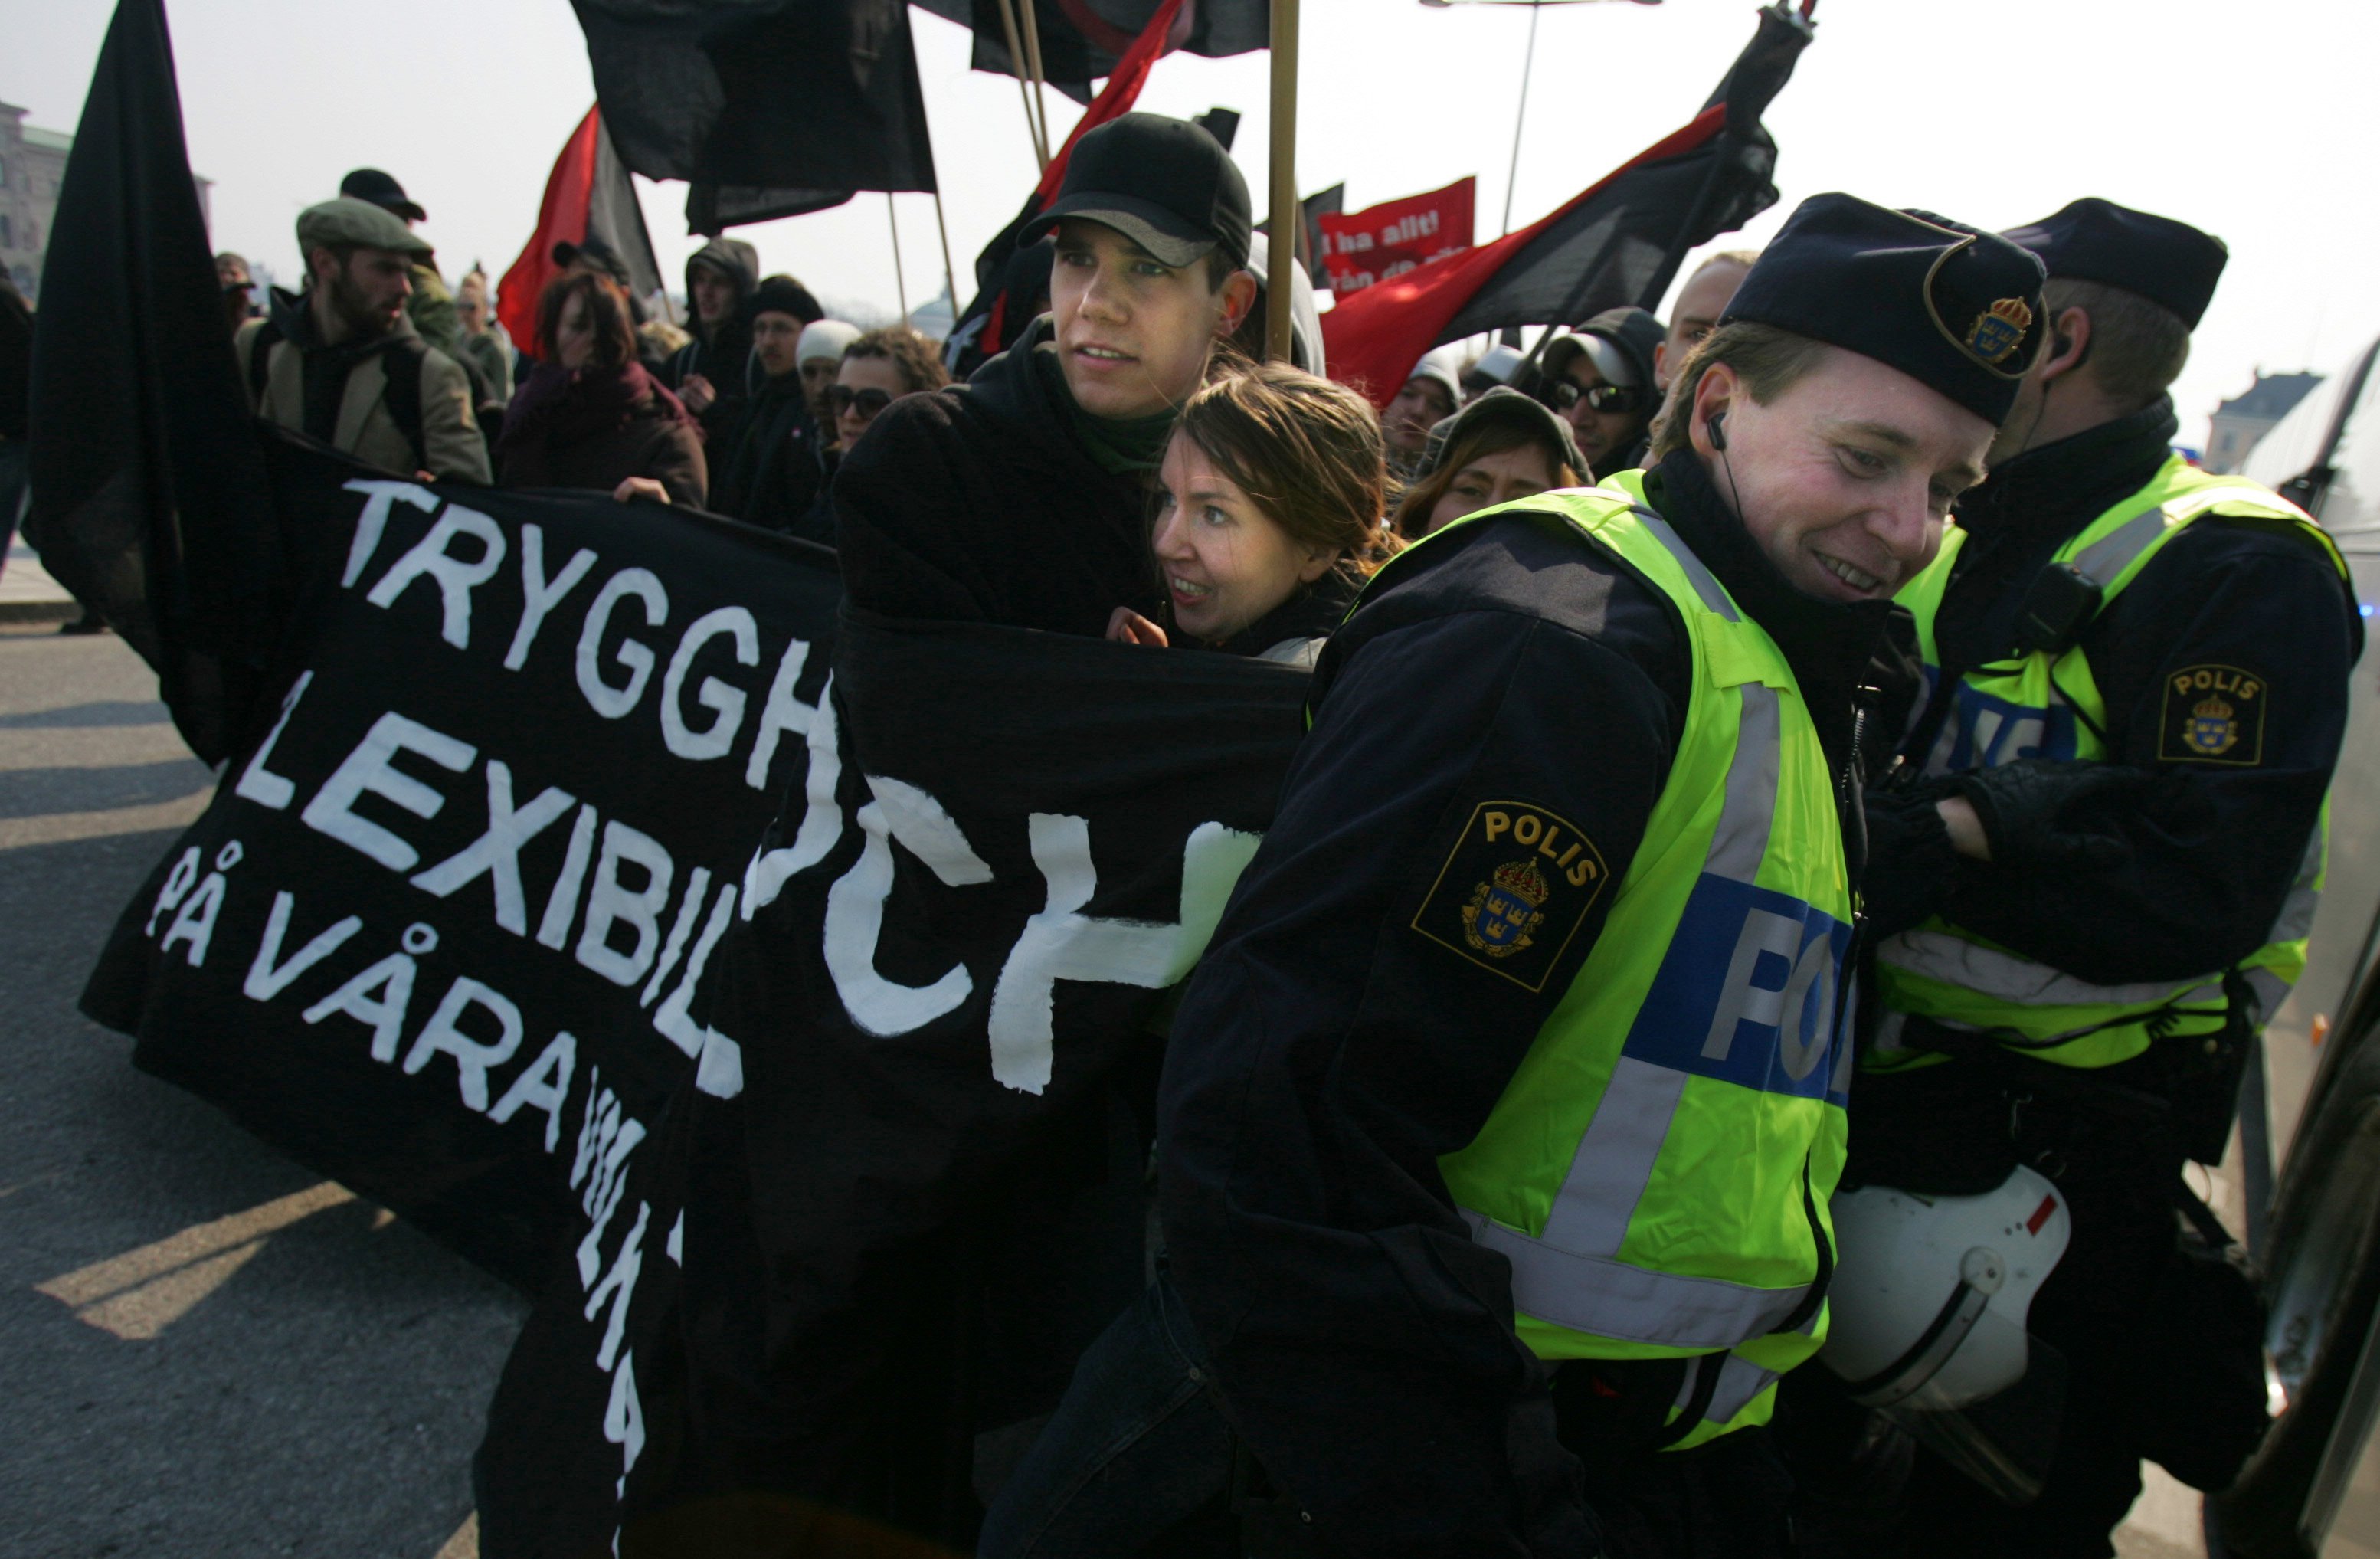 Syndikalisternas demonstration i Stockholm.